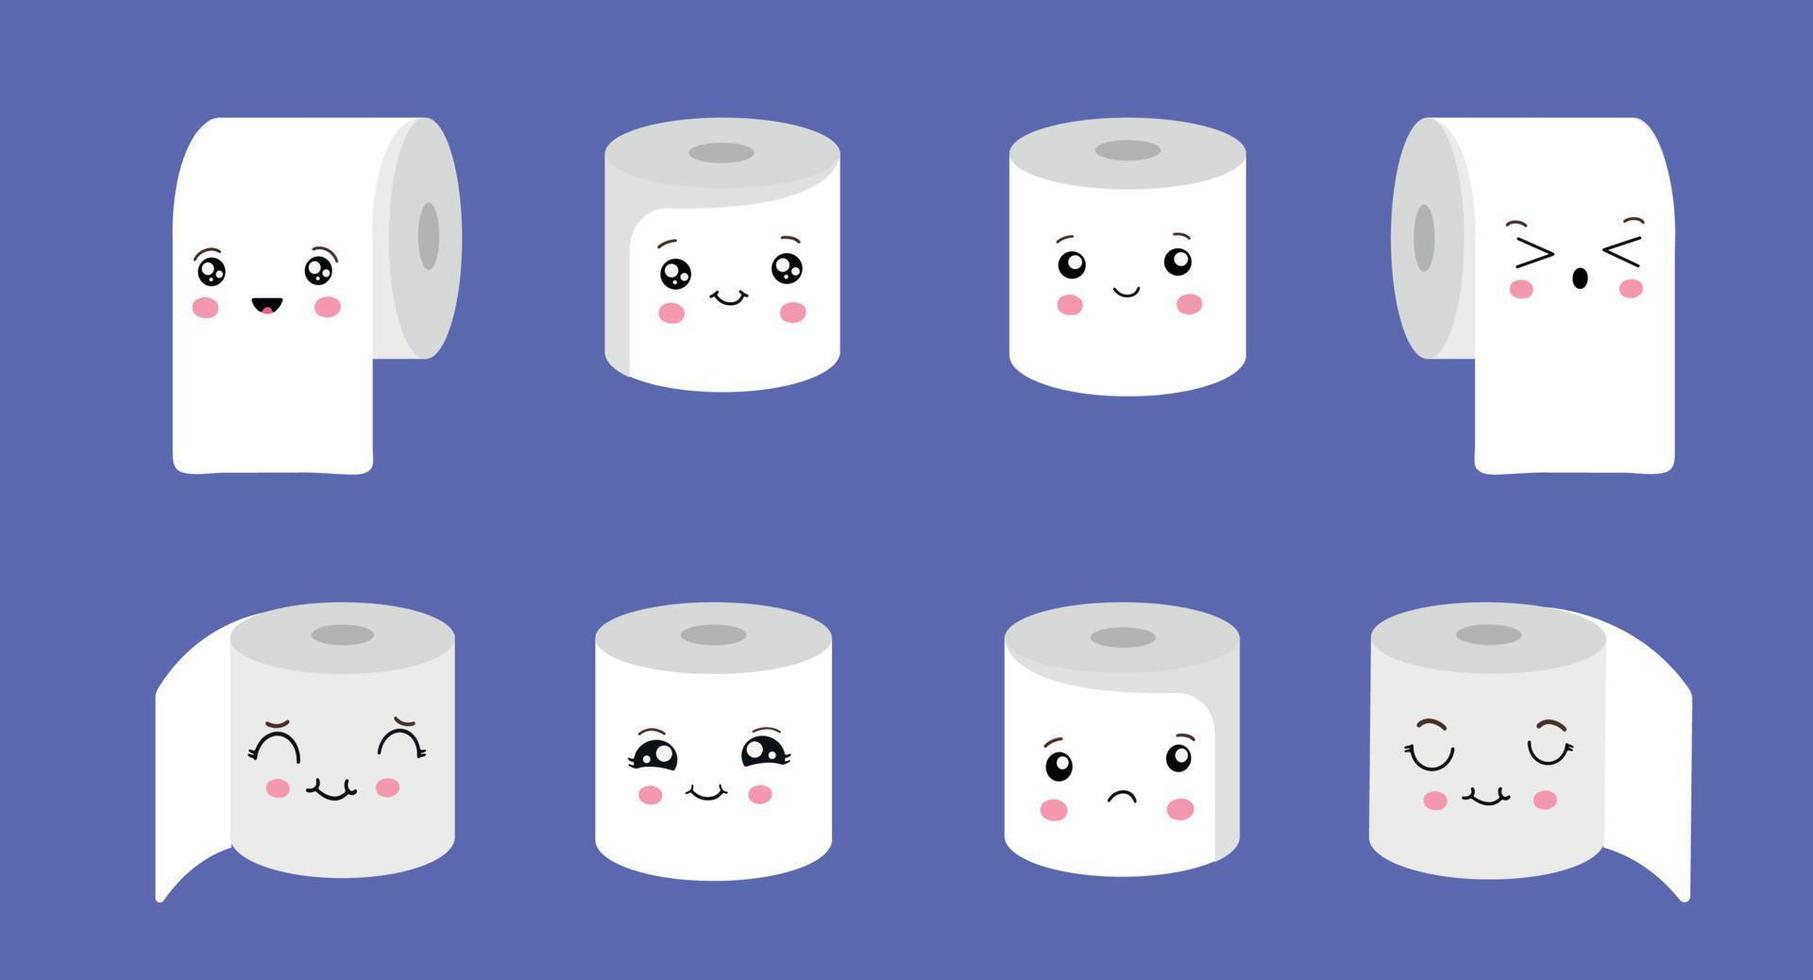 juego de rollos de papel higiénico en diferentes posiciones. inodoro y elemento de baño. Higiene y sanidad. conjunto de emoji de papel higiénico vectorial. divertidos emoticonos de dibujos animados. vector